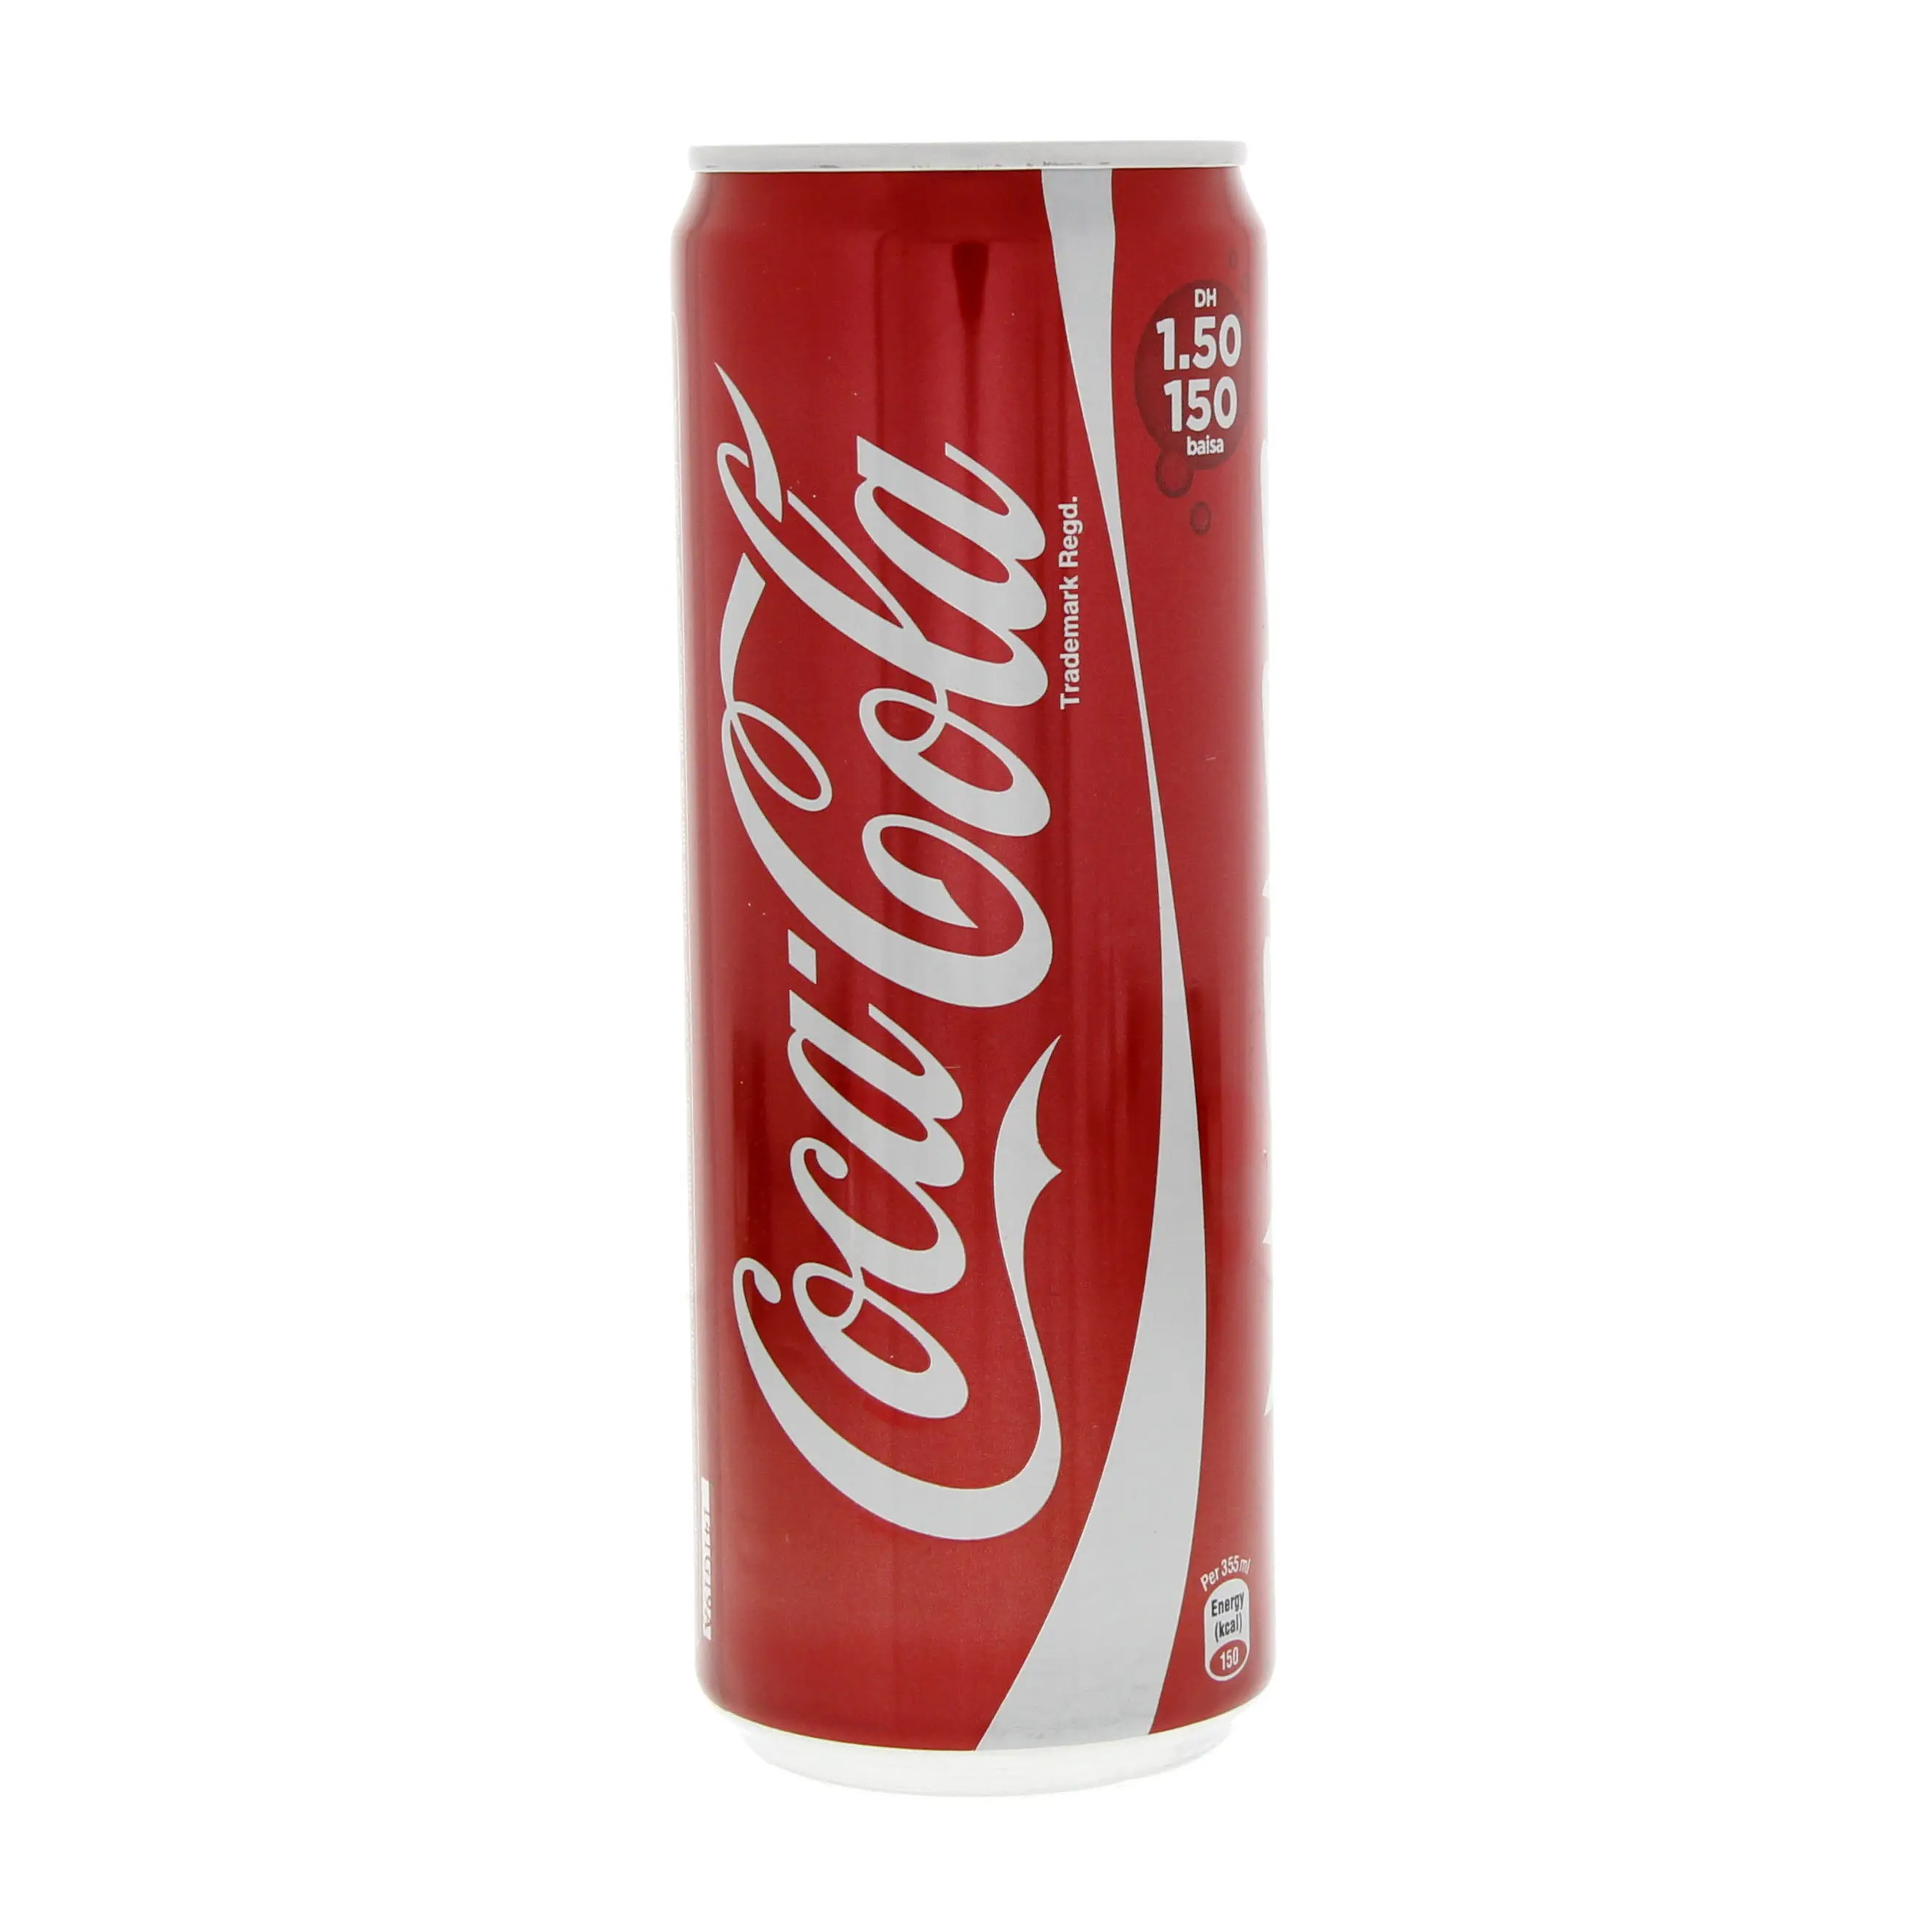 コカコーラソフトドリンクの一括注文: コーラ、ダイエットコーラ、コカコーラゼロ、ファンタ、スプライトを見つける